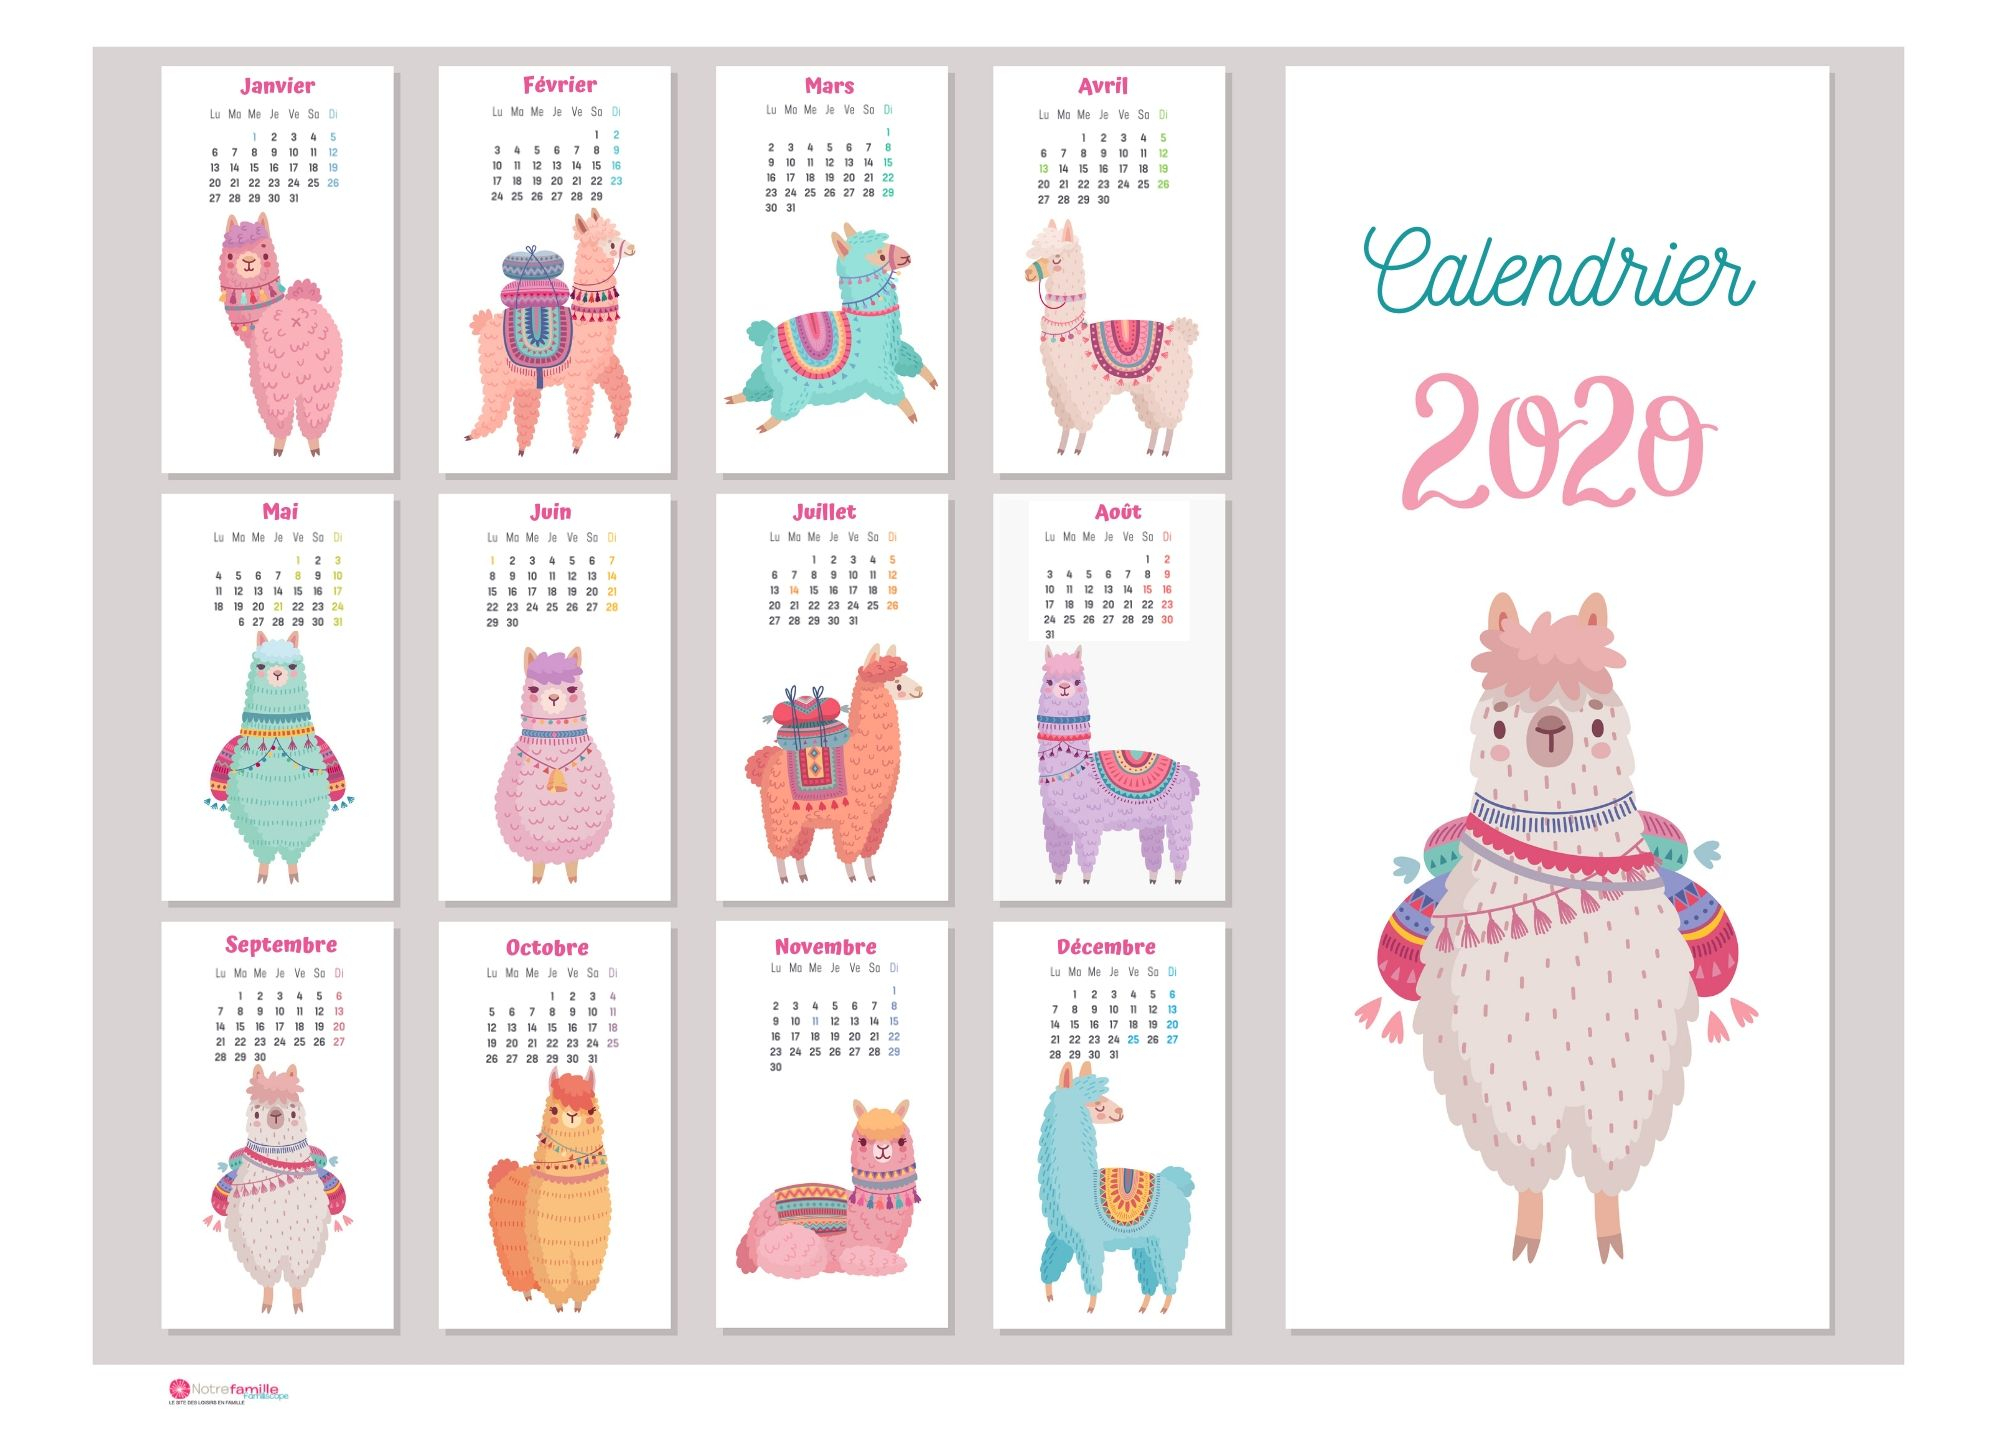 Calendriers 2020 À Imprimer Pour Les Enfants tout Calendrier D Anniversaire Gratuit À Imprimer